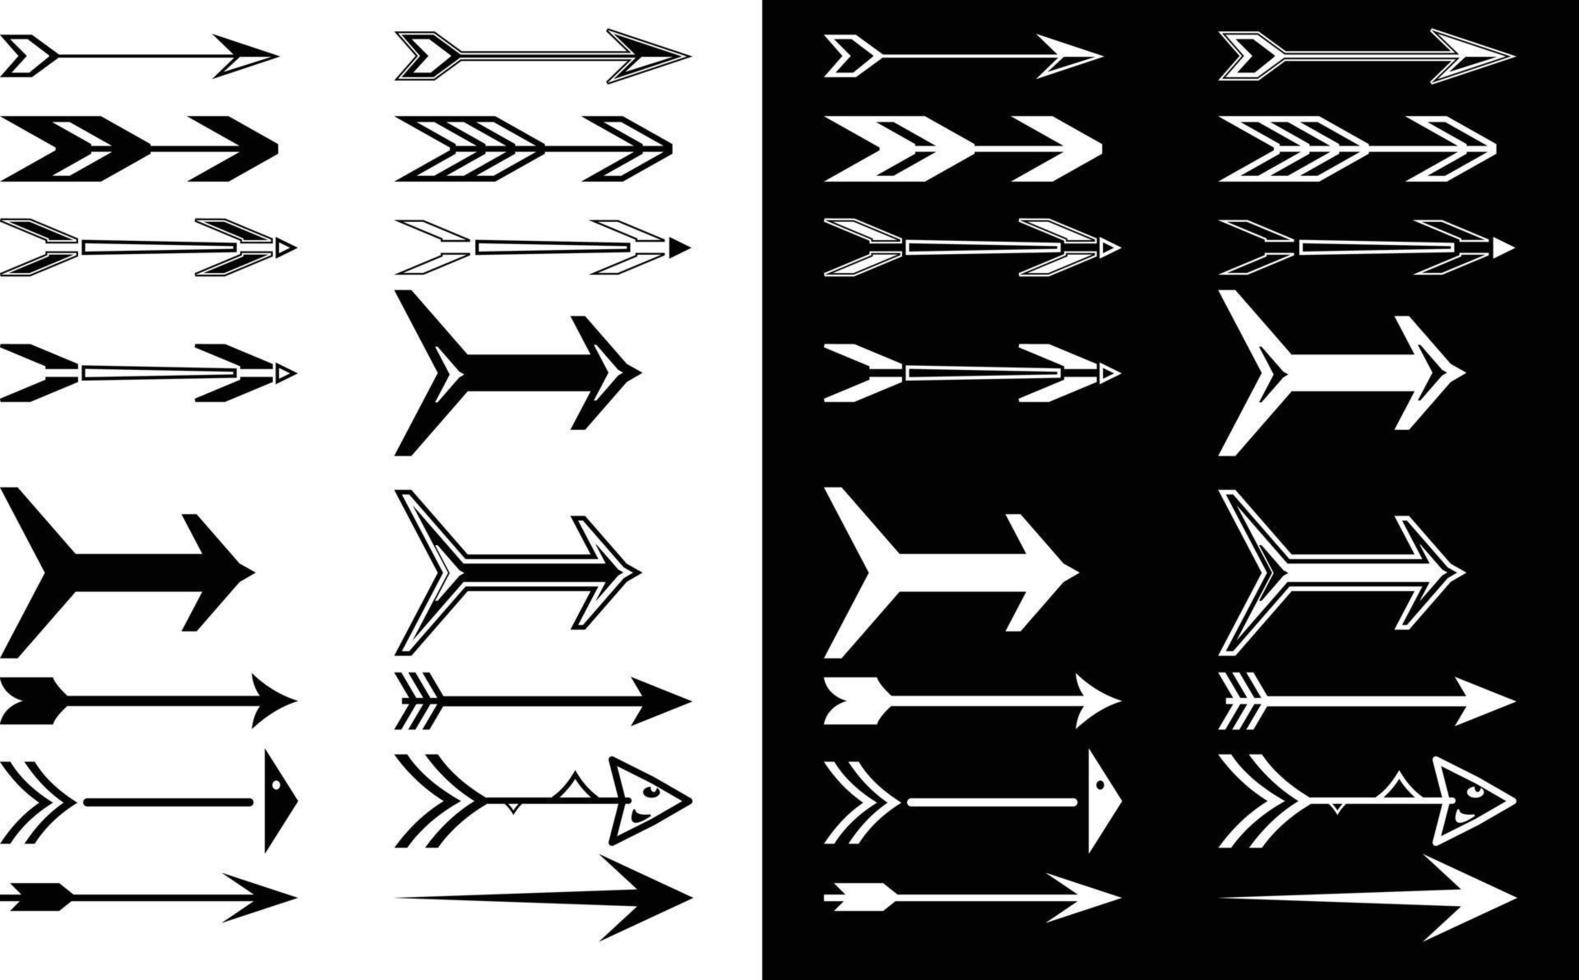 vektor pil set för kommersiellt bruk, svart och vit pil set illustration, pil bunt i svart och vit färg